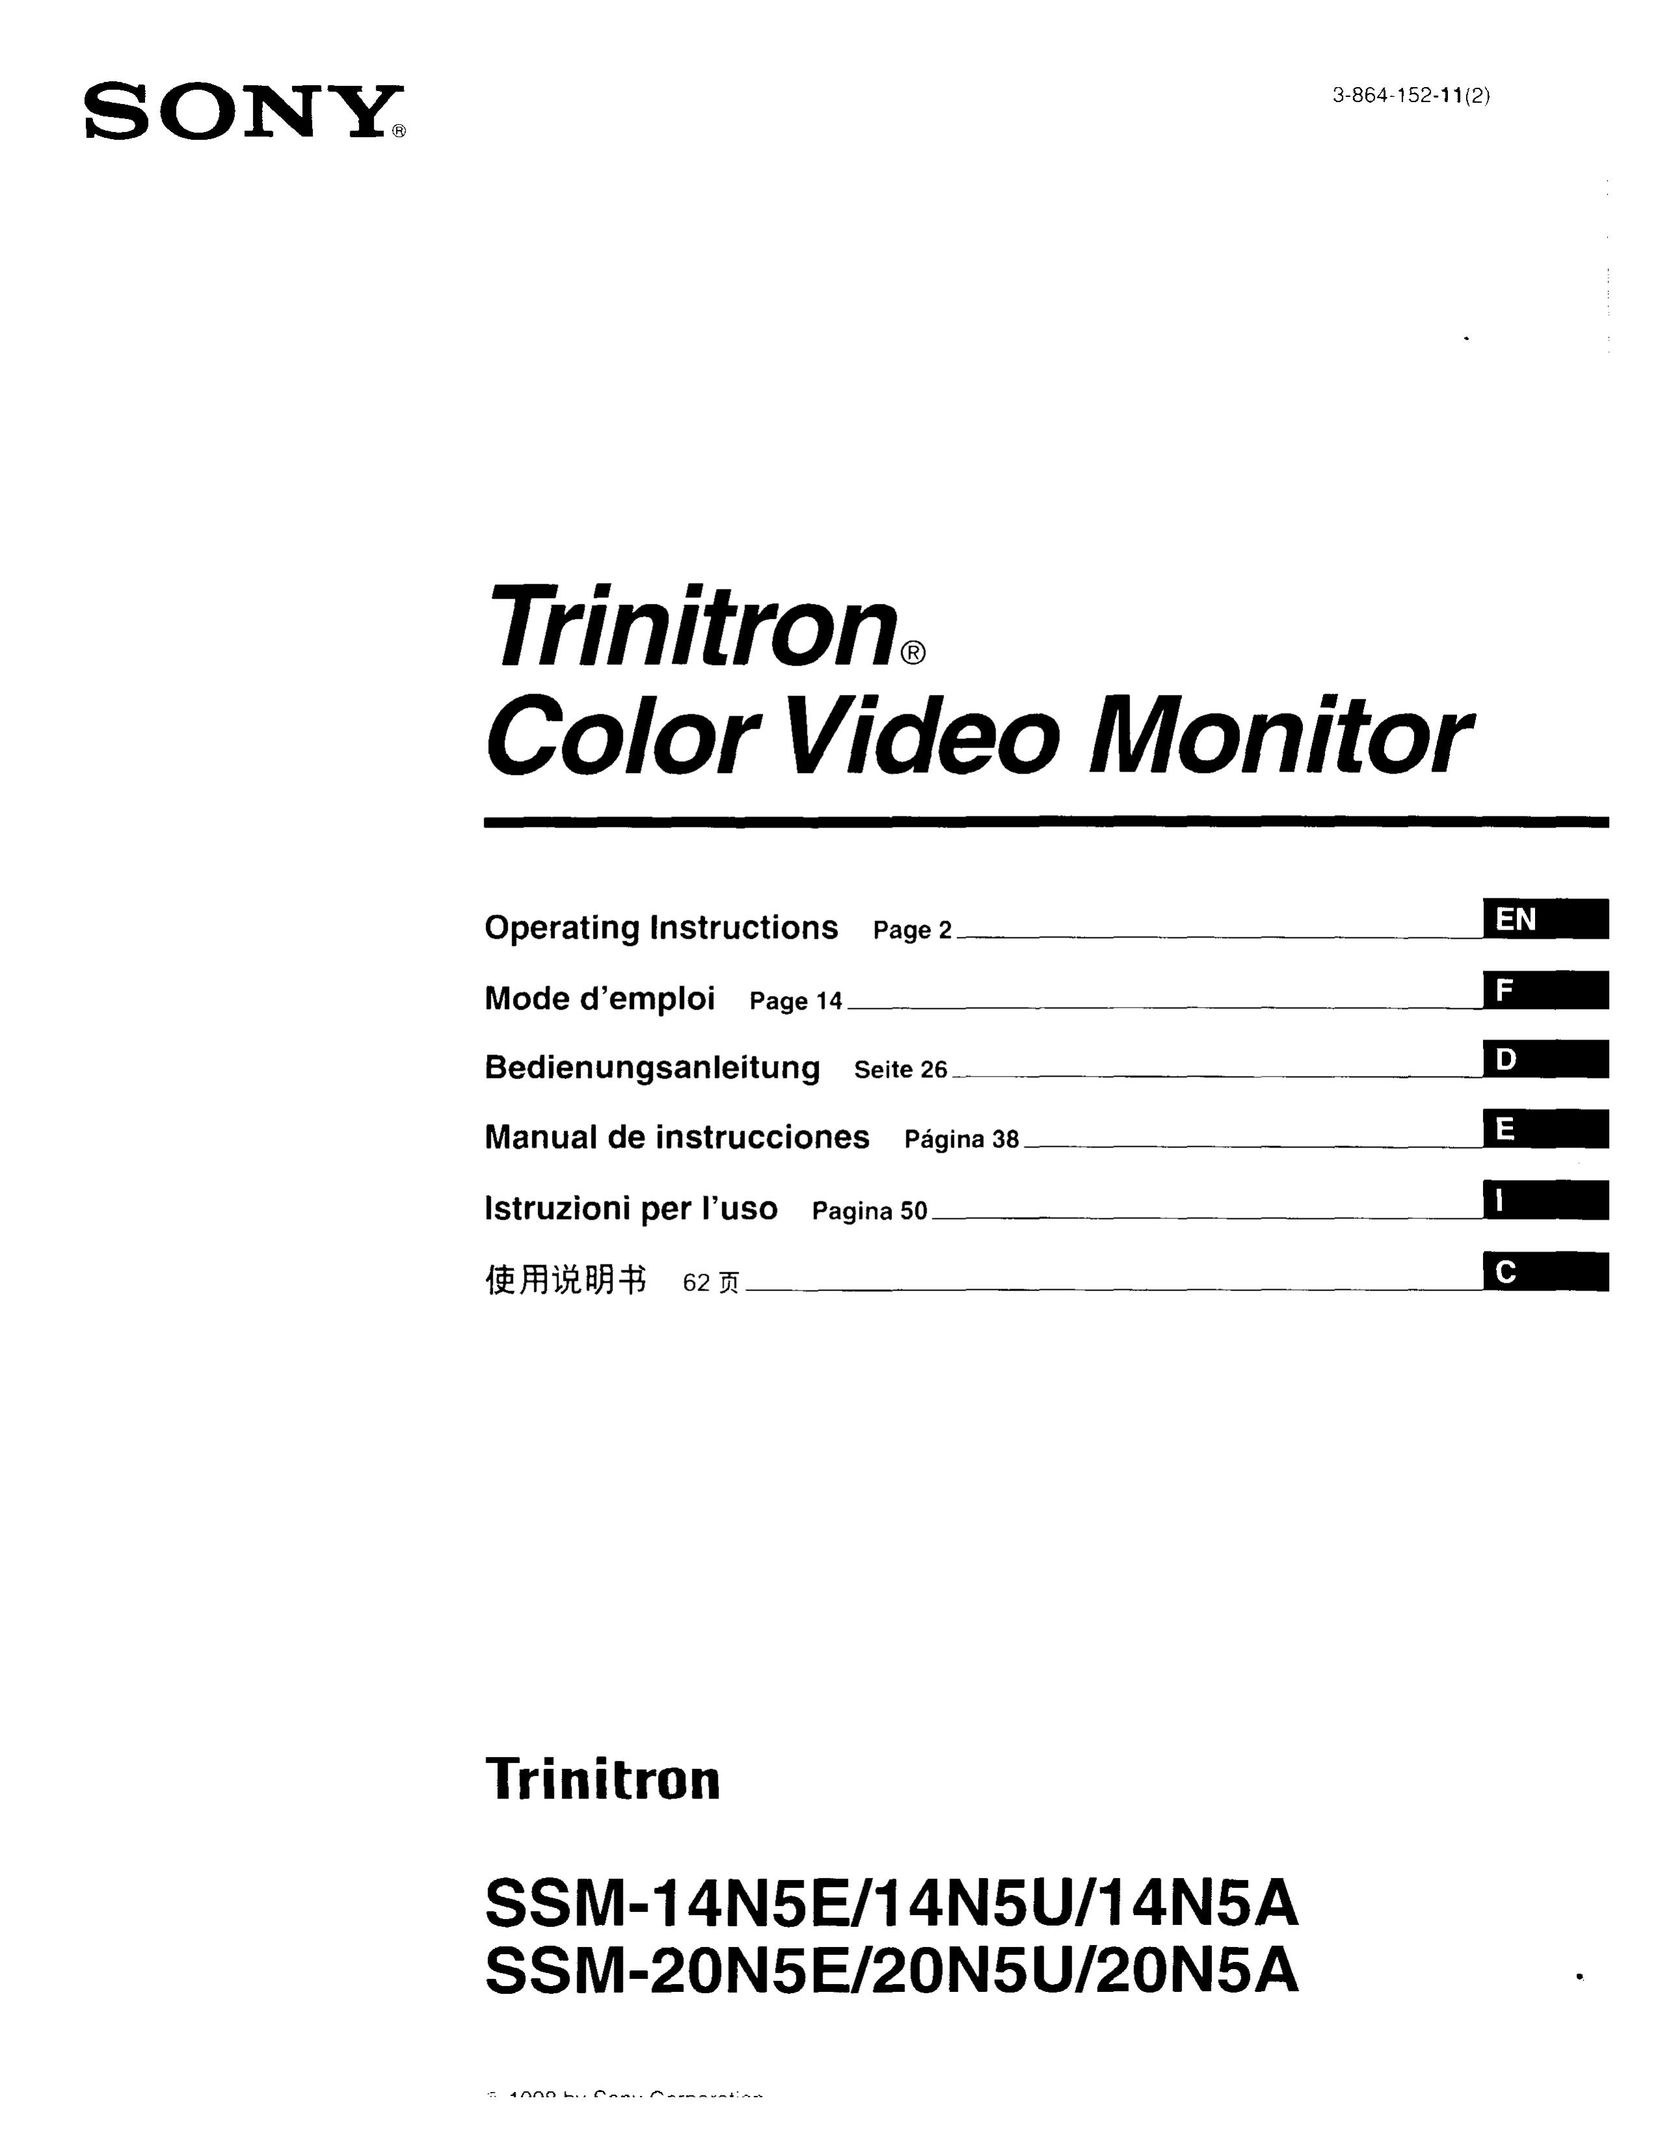 Sony SSM-20N5E/20N5U/20N5A Car Video System User Manual